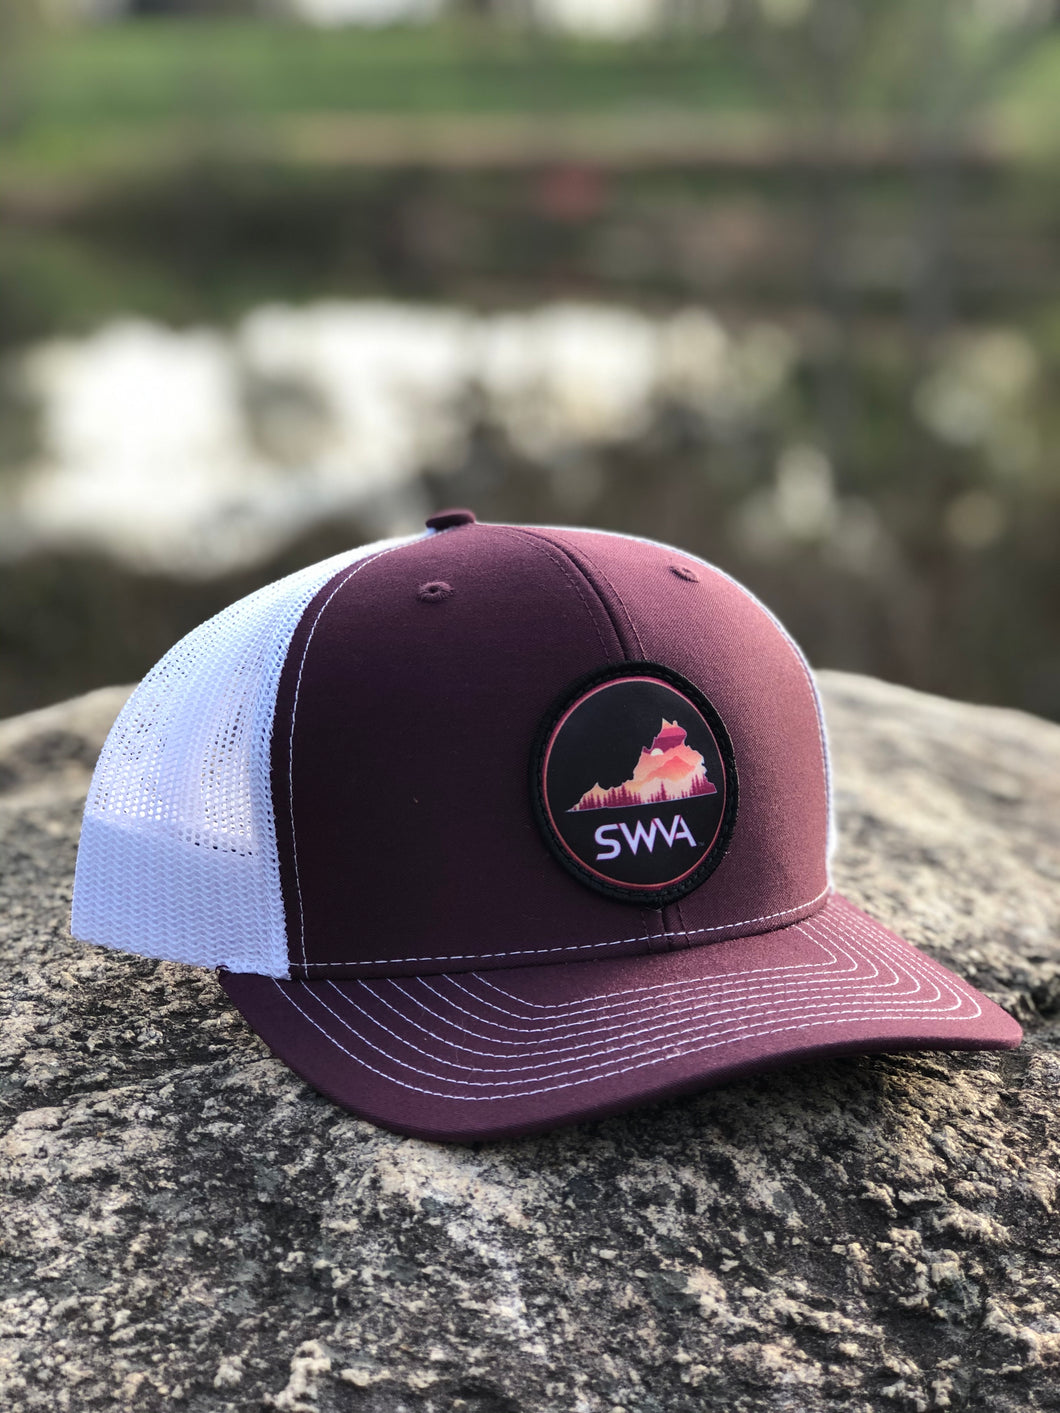 SWVA Trucker Hat (Maroon/White) - Maroon/Orange Patch